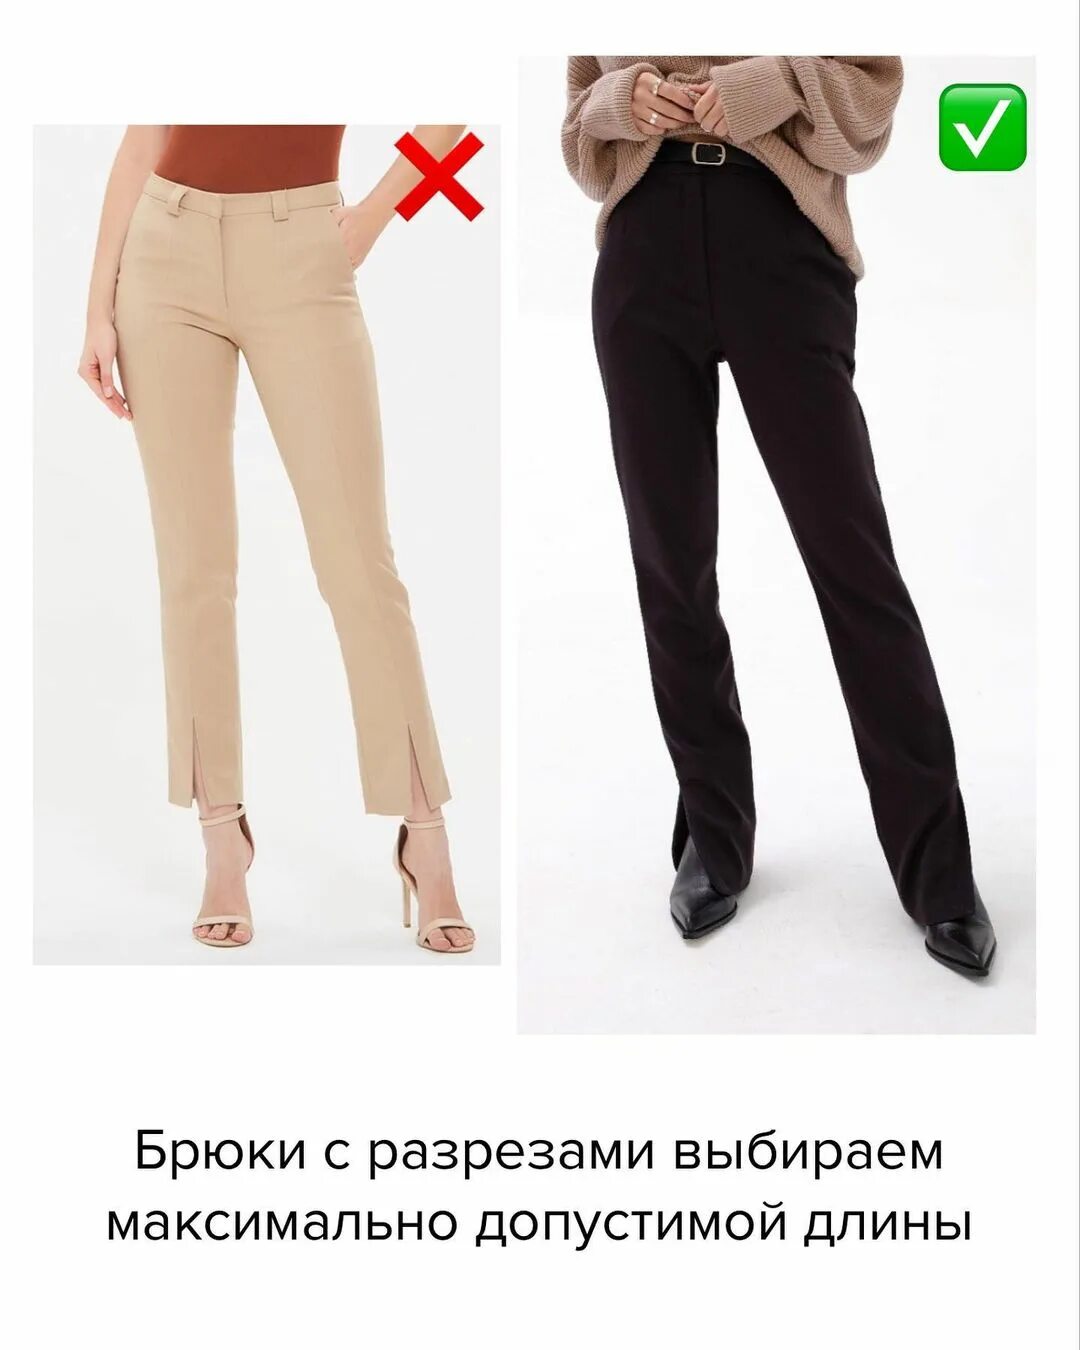 Брюки со стрелками женские. Правильная длина брюк. Укороченные брюки под каблук. Правильная длина брюк женских классических.